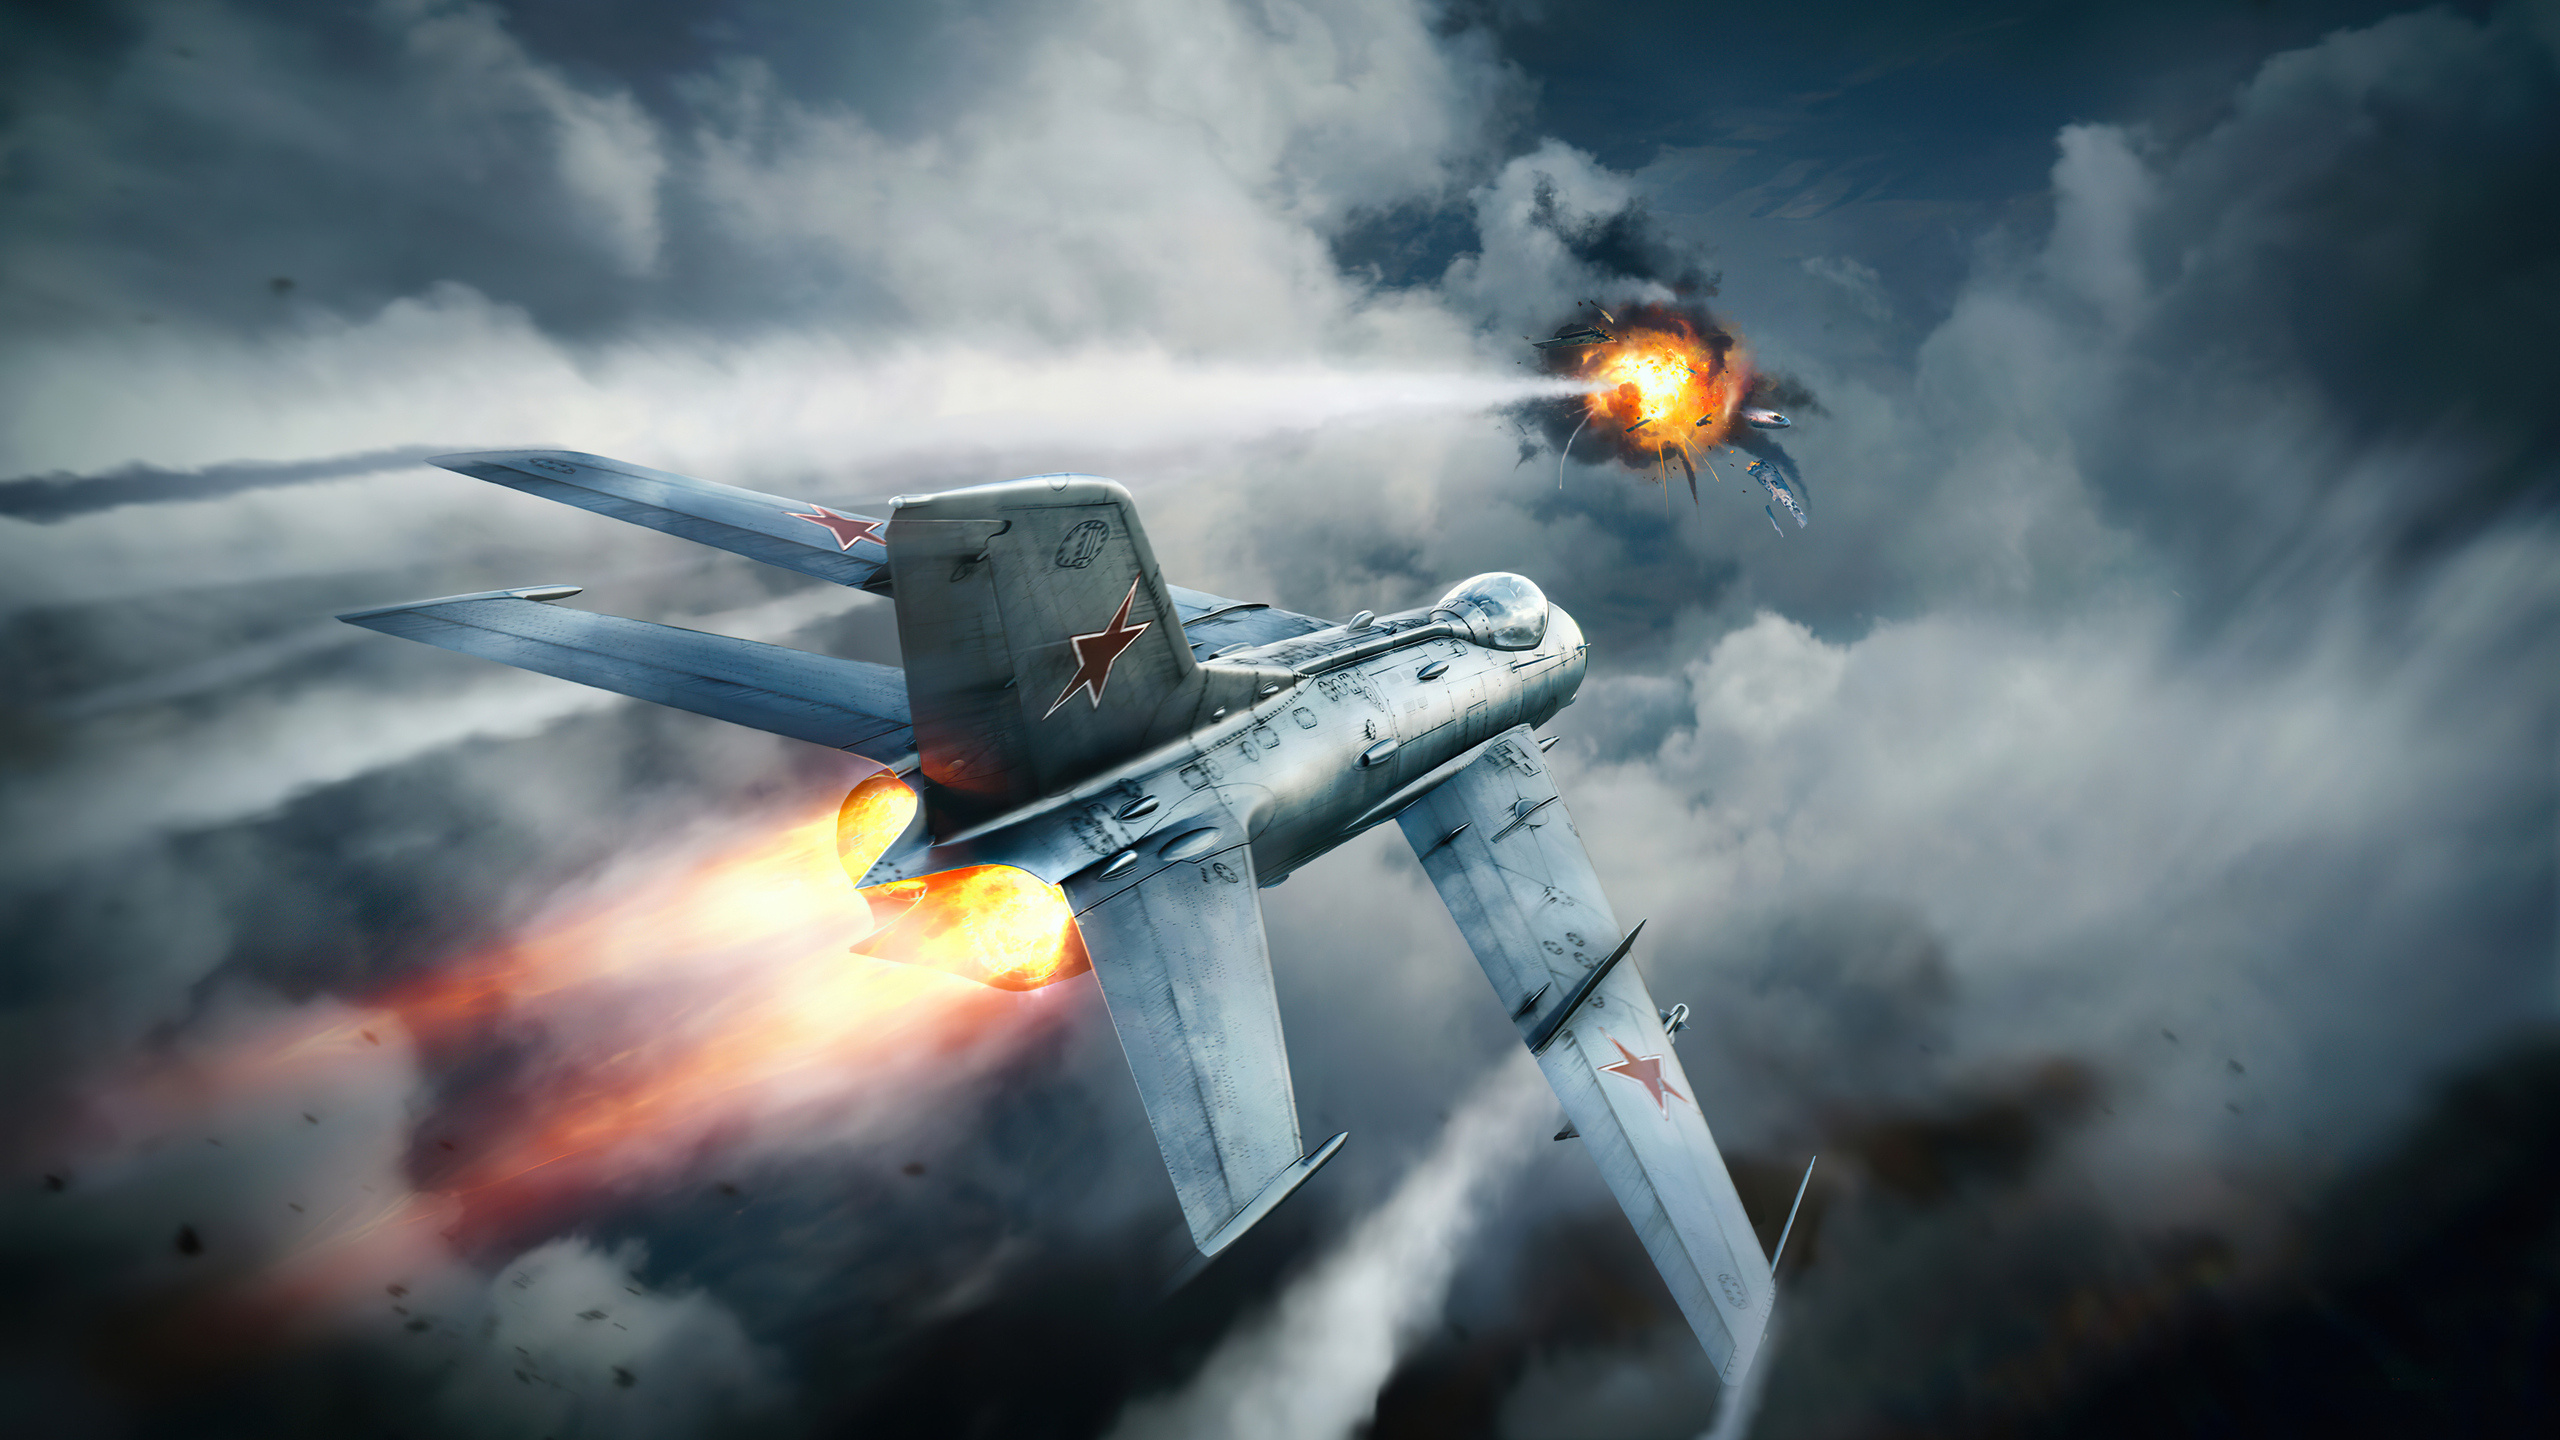 War Thunder, Fighter planes art, 4K resolution, High-definition wallpapers, 2560x1440 HD Desktop